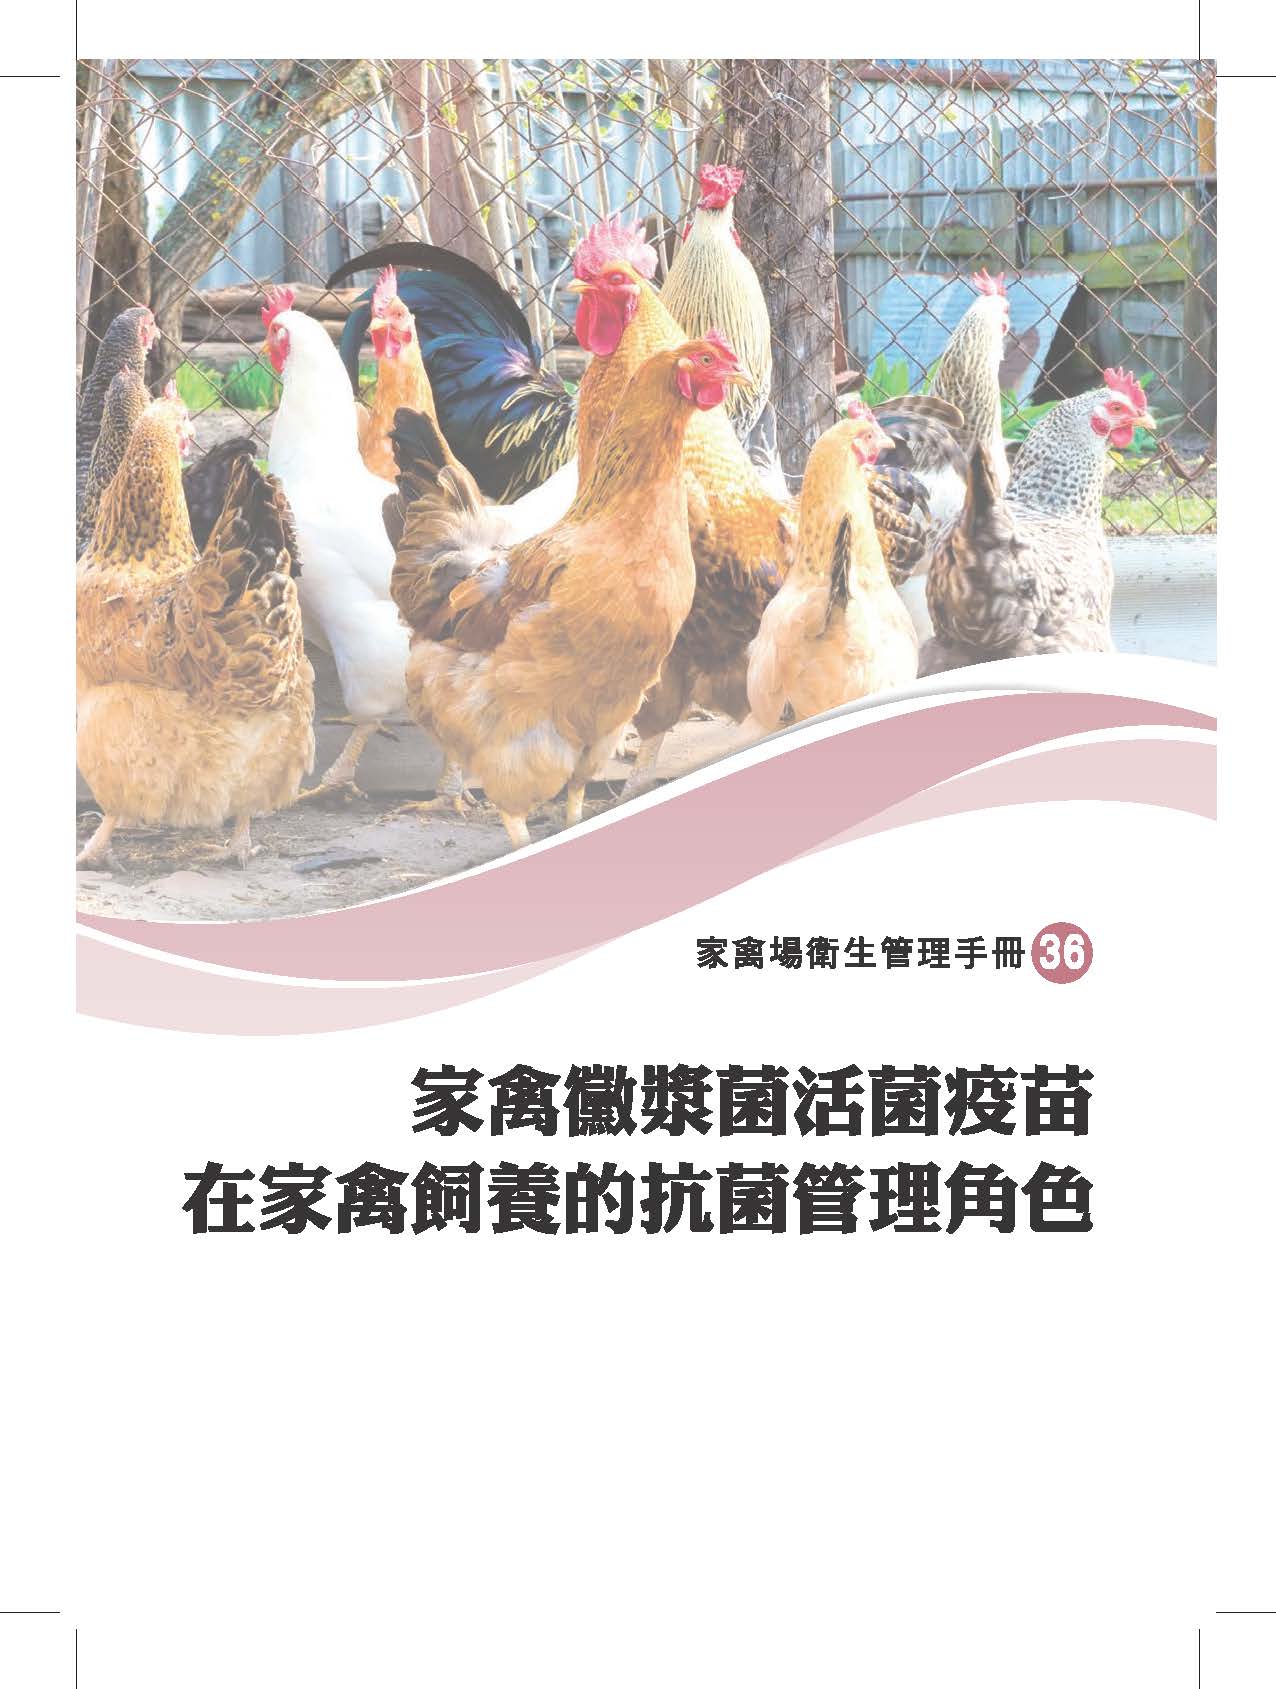 家禽場衛生管理手冊-家禽黴漿菌活菌疫苗在家禽飼養的抗菌管理角色 